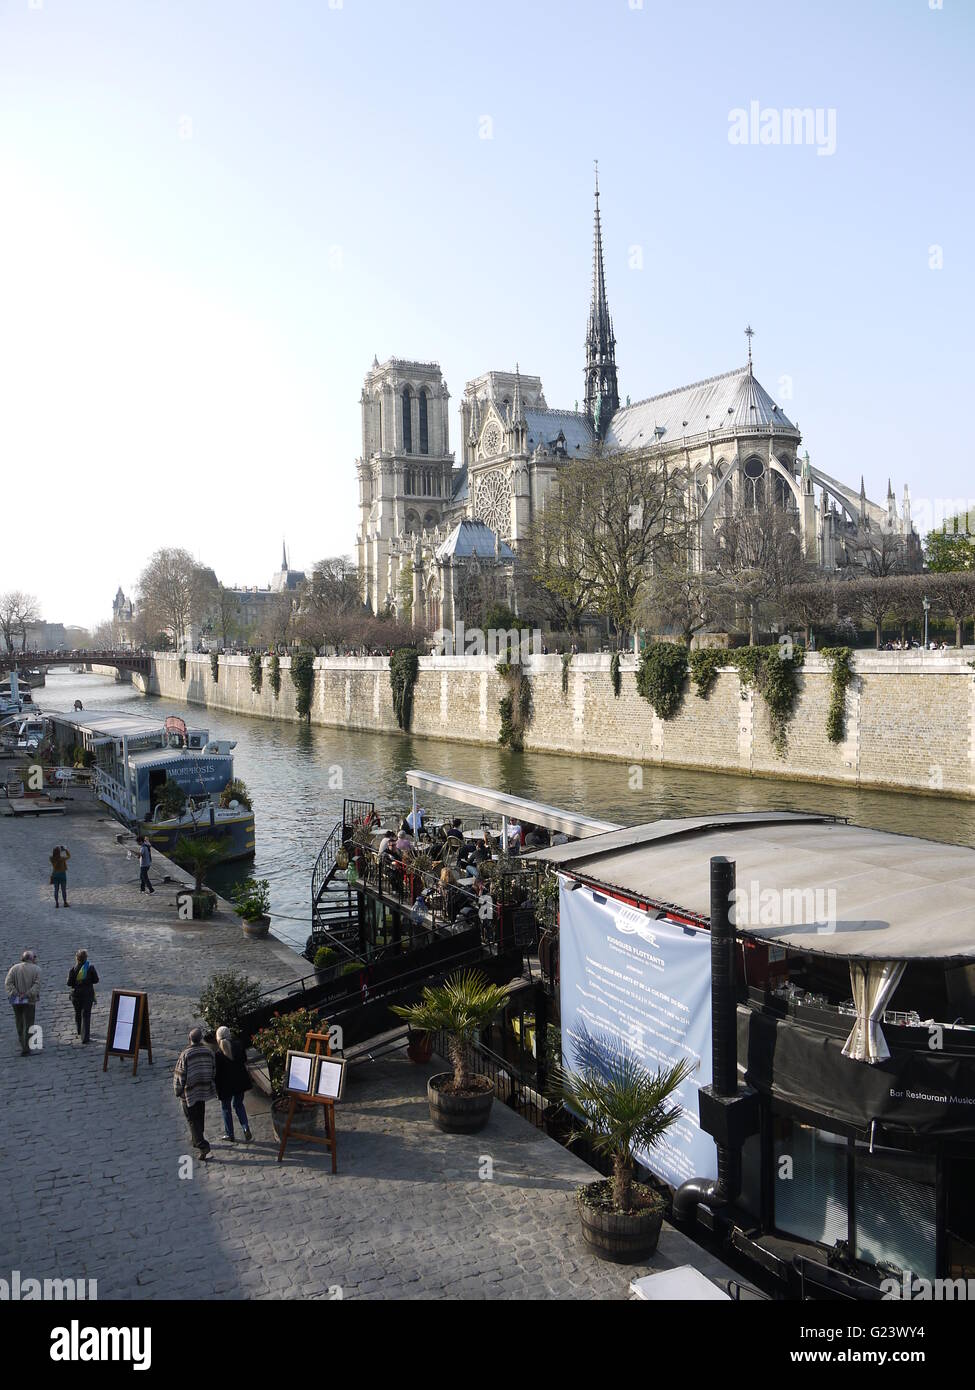 La cathédrale Notre Dame de Paris en capitale française, Paris est dans le centre de la ville, près de la rivière Seine Banque D'Images